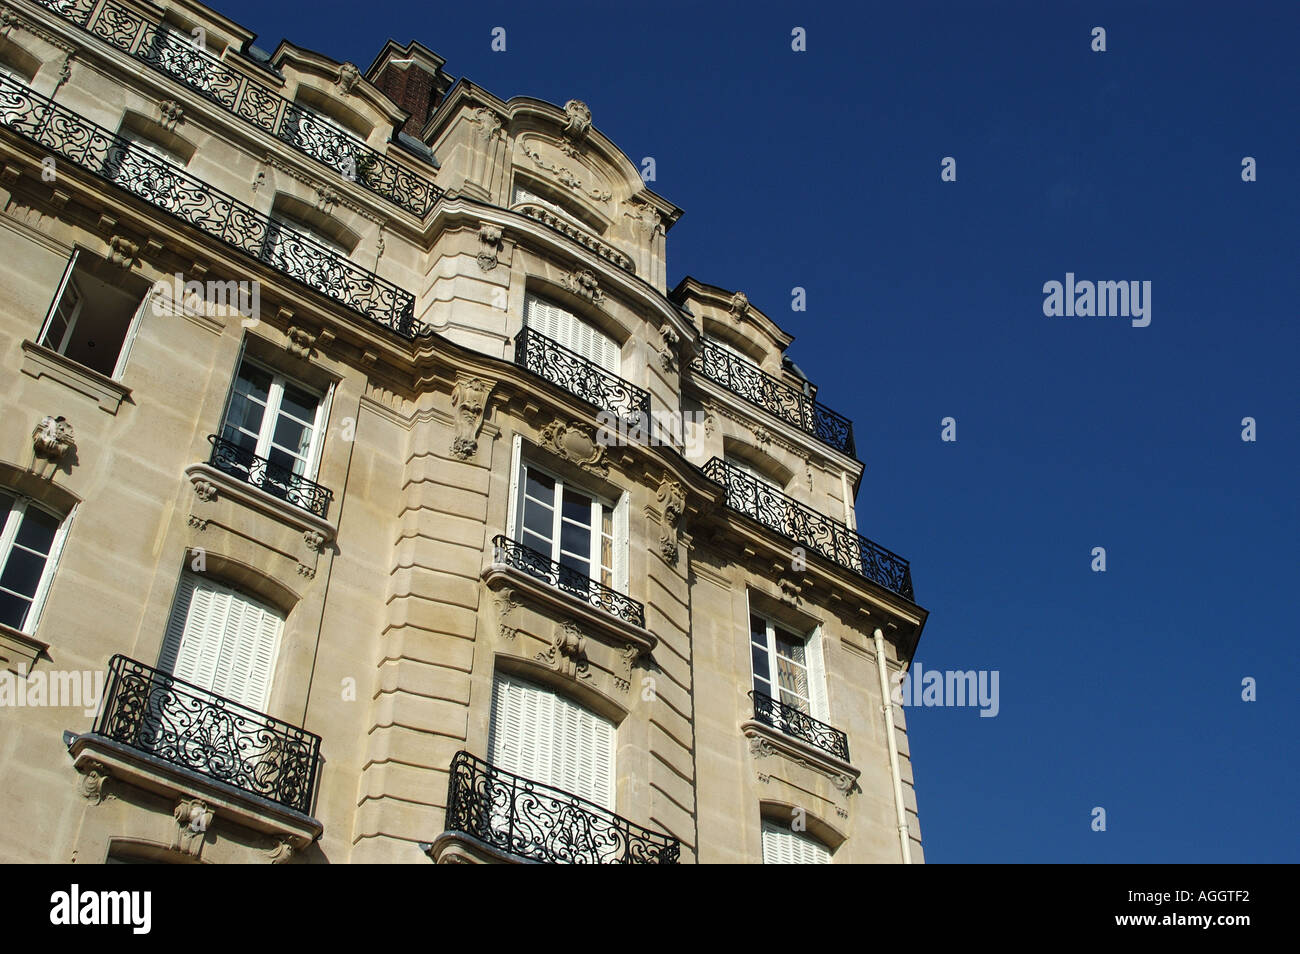 Architecture of Ile st Louis Paris France Stock Photo